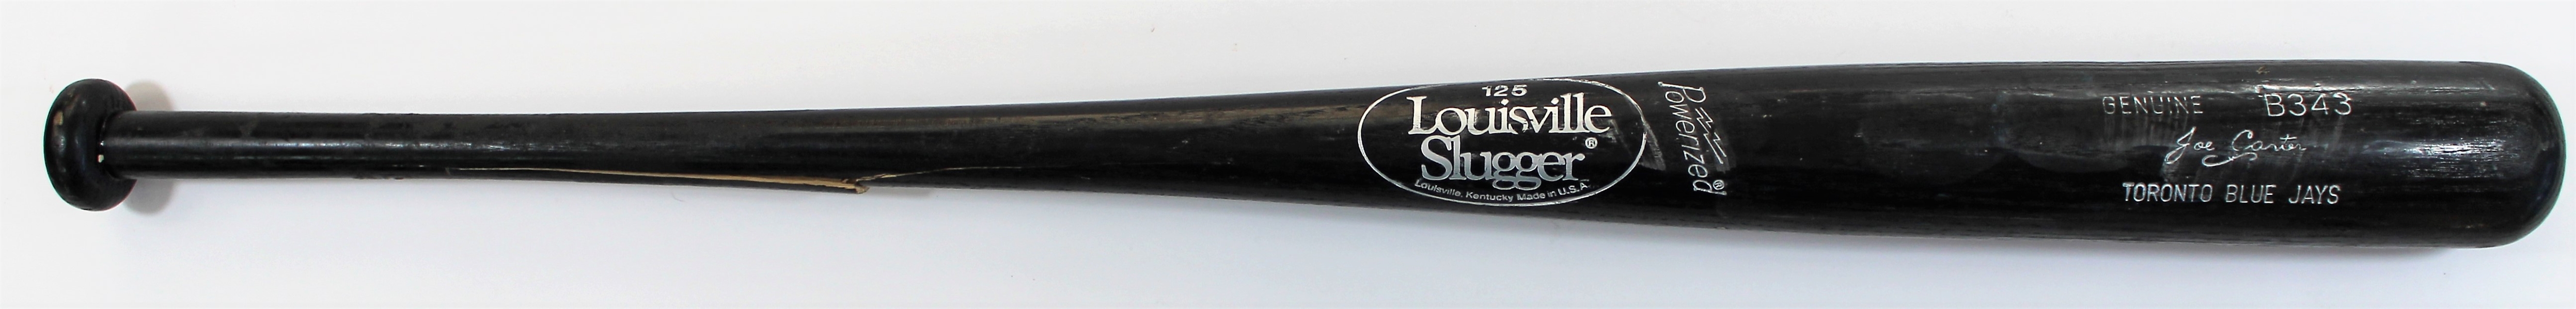 1991-95 Joe Carter Game Used Bat